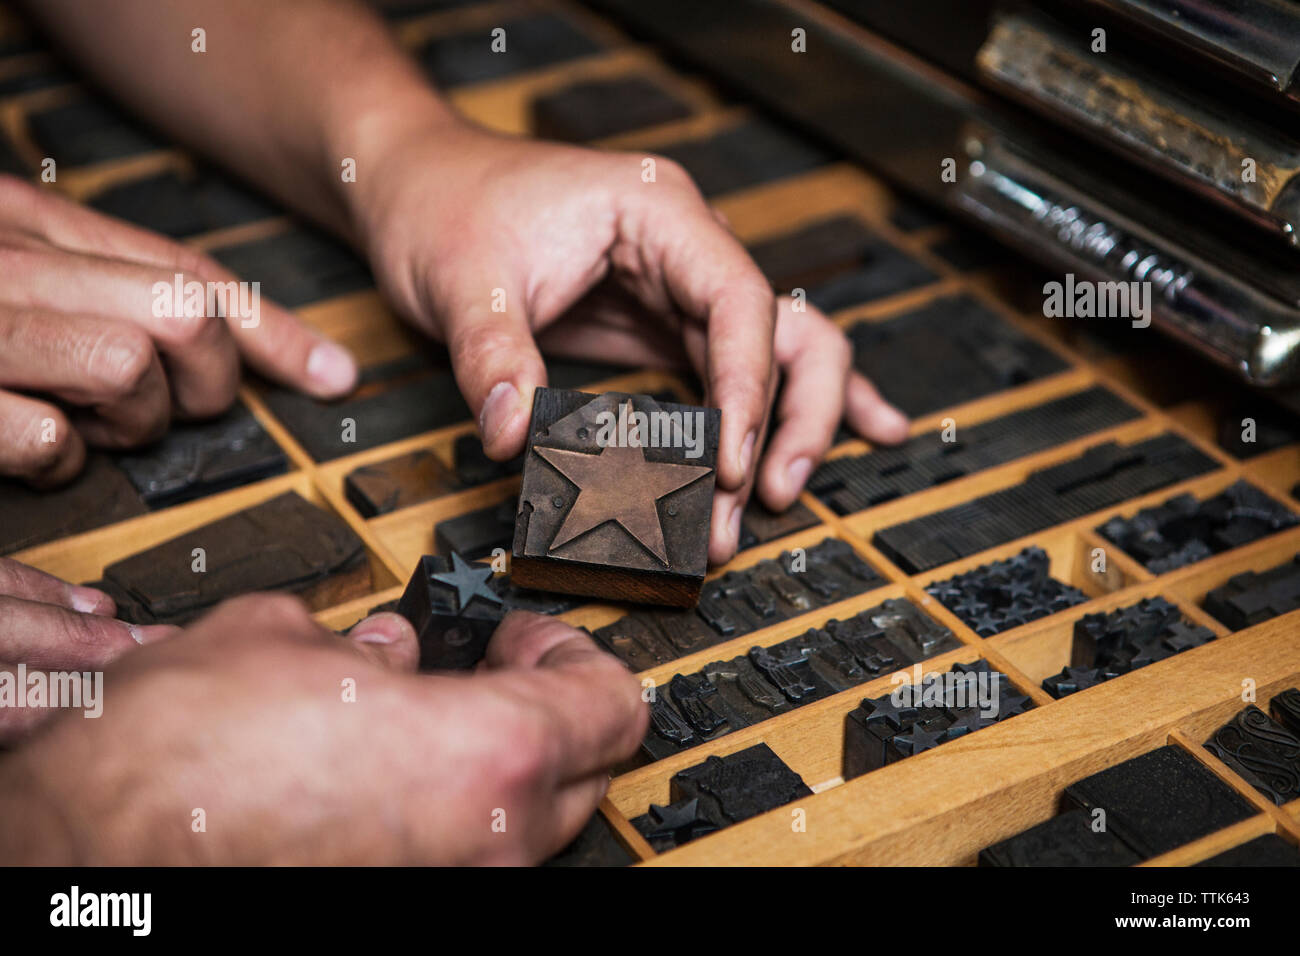 Imagen recortada de manos sosteniendo estrella la serigrafía en el taller Foto de stock